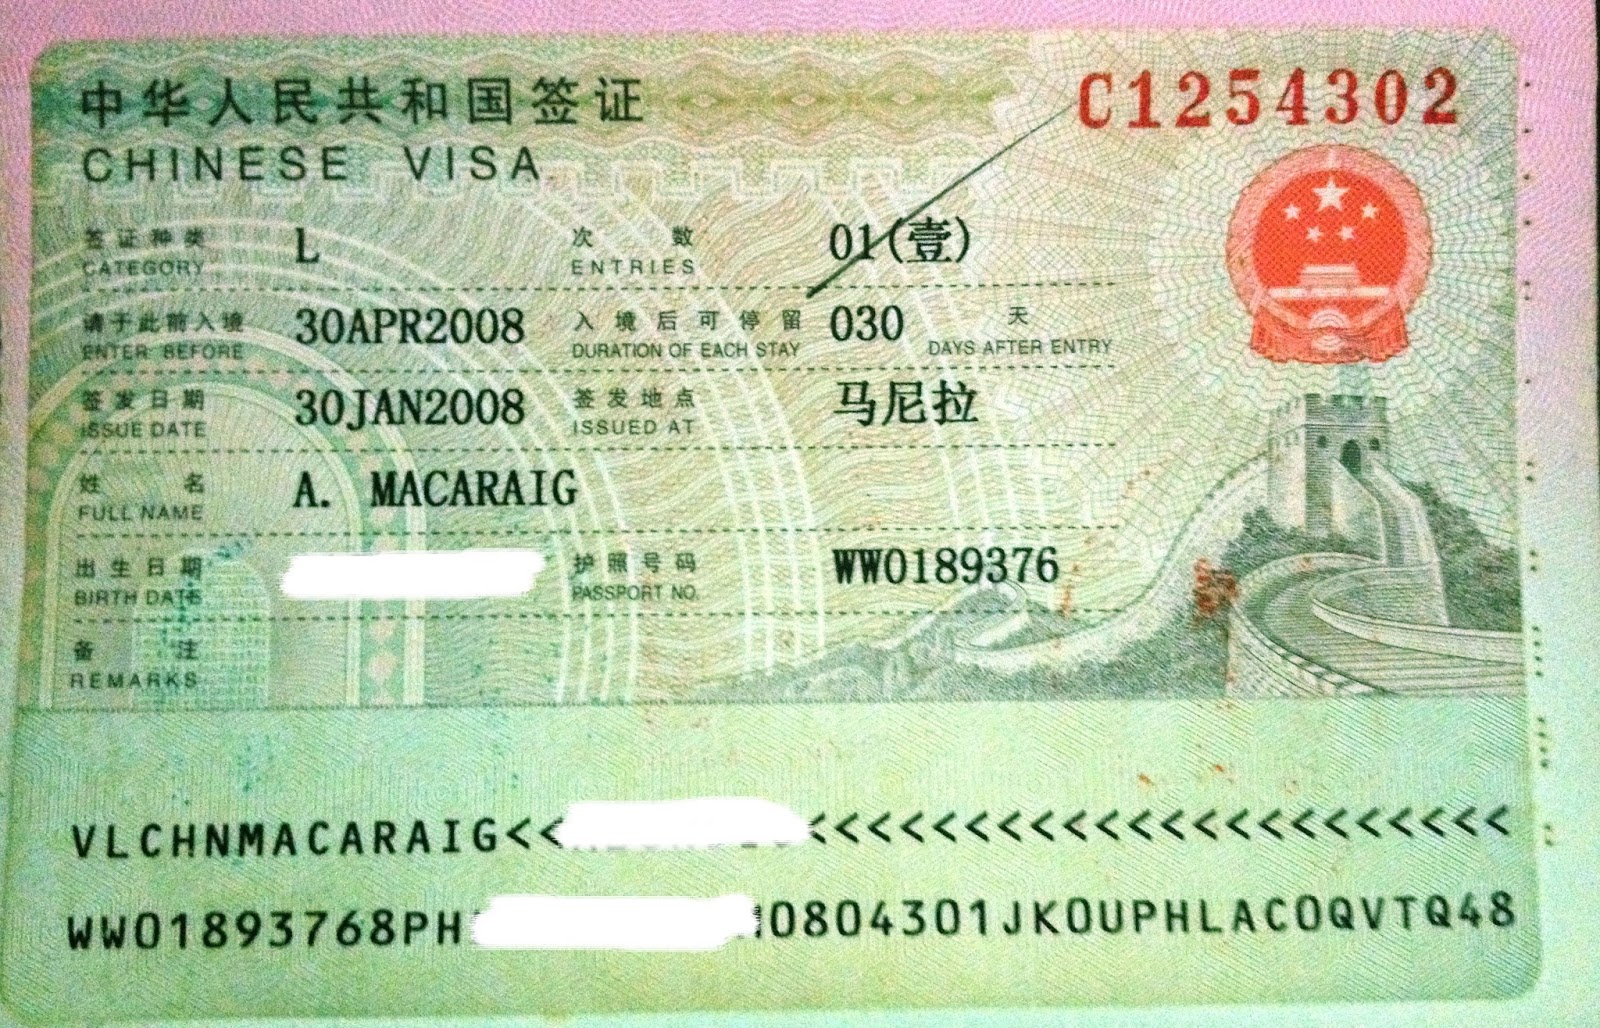 Entry visa. Энтри виза. Китайская виза. Chinese visa. Визы азиатских стран.